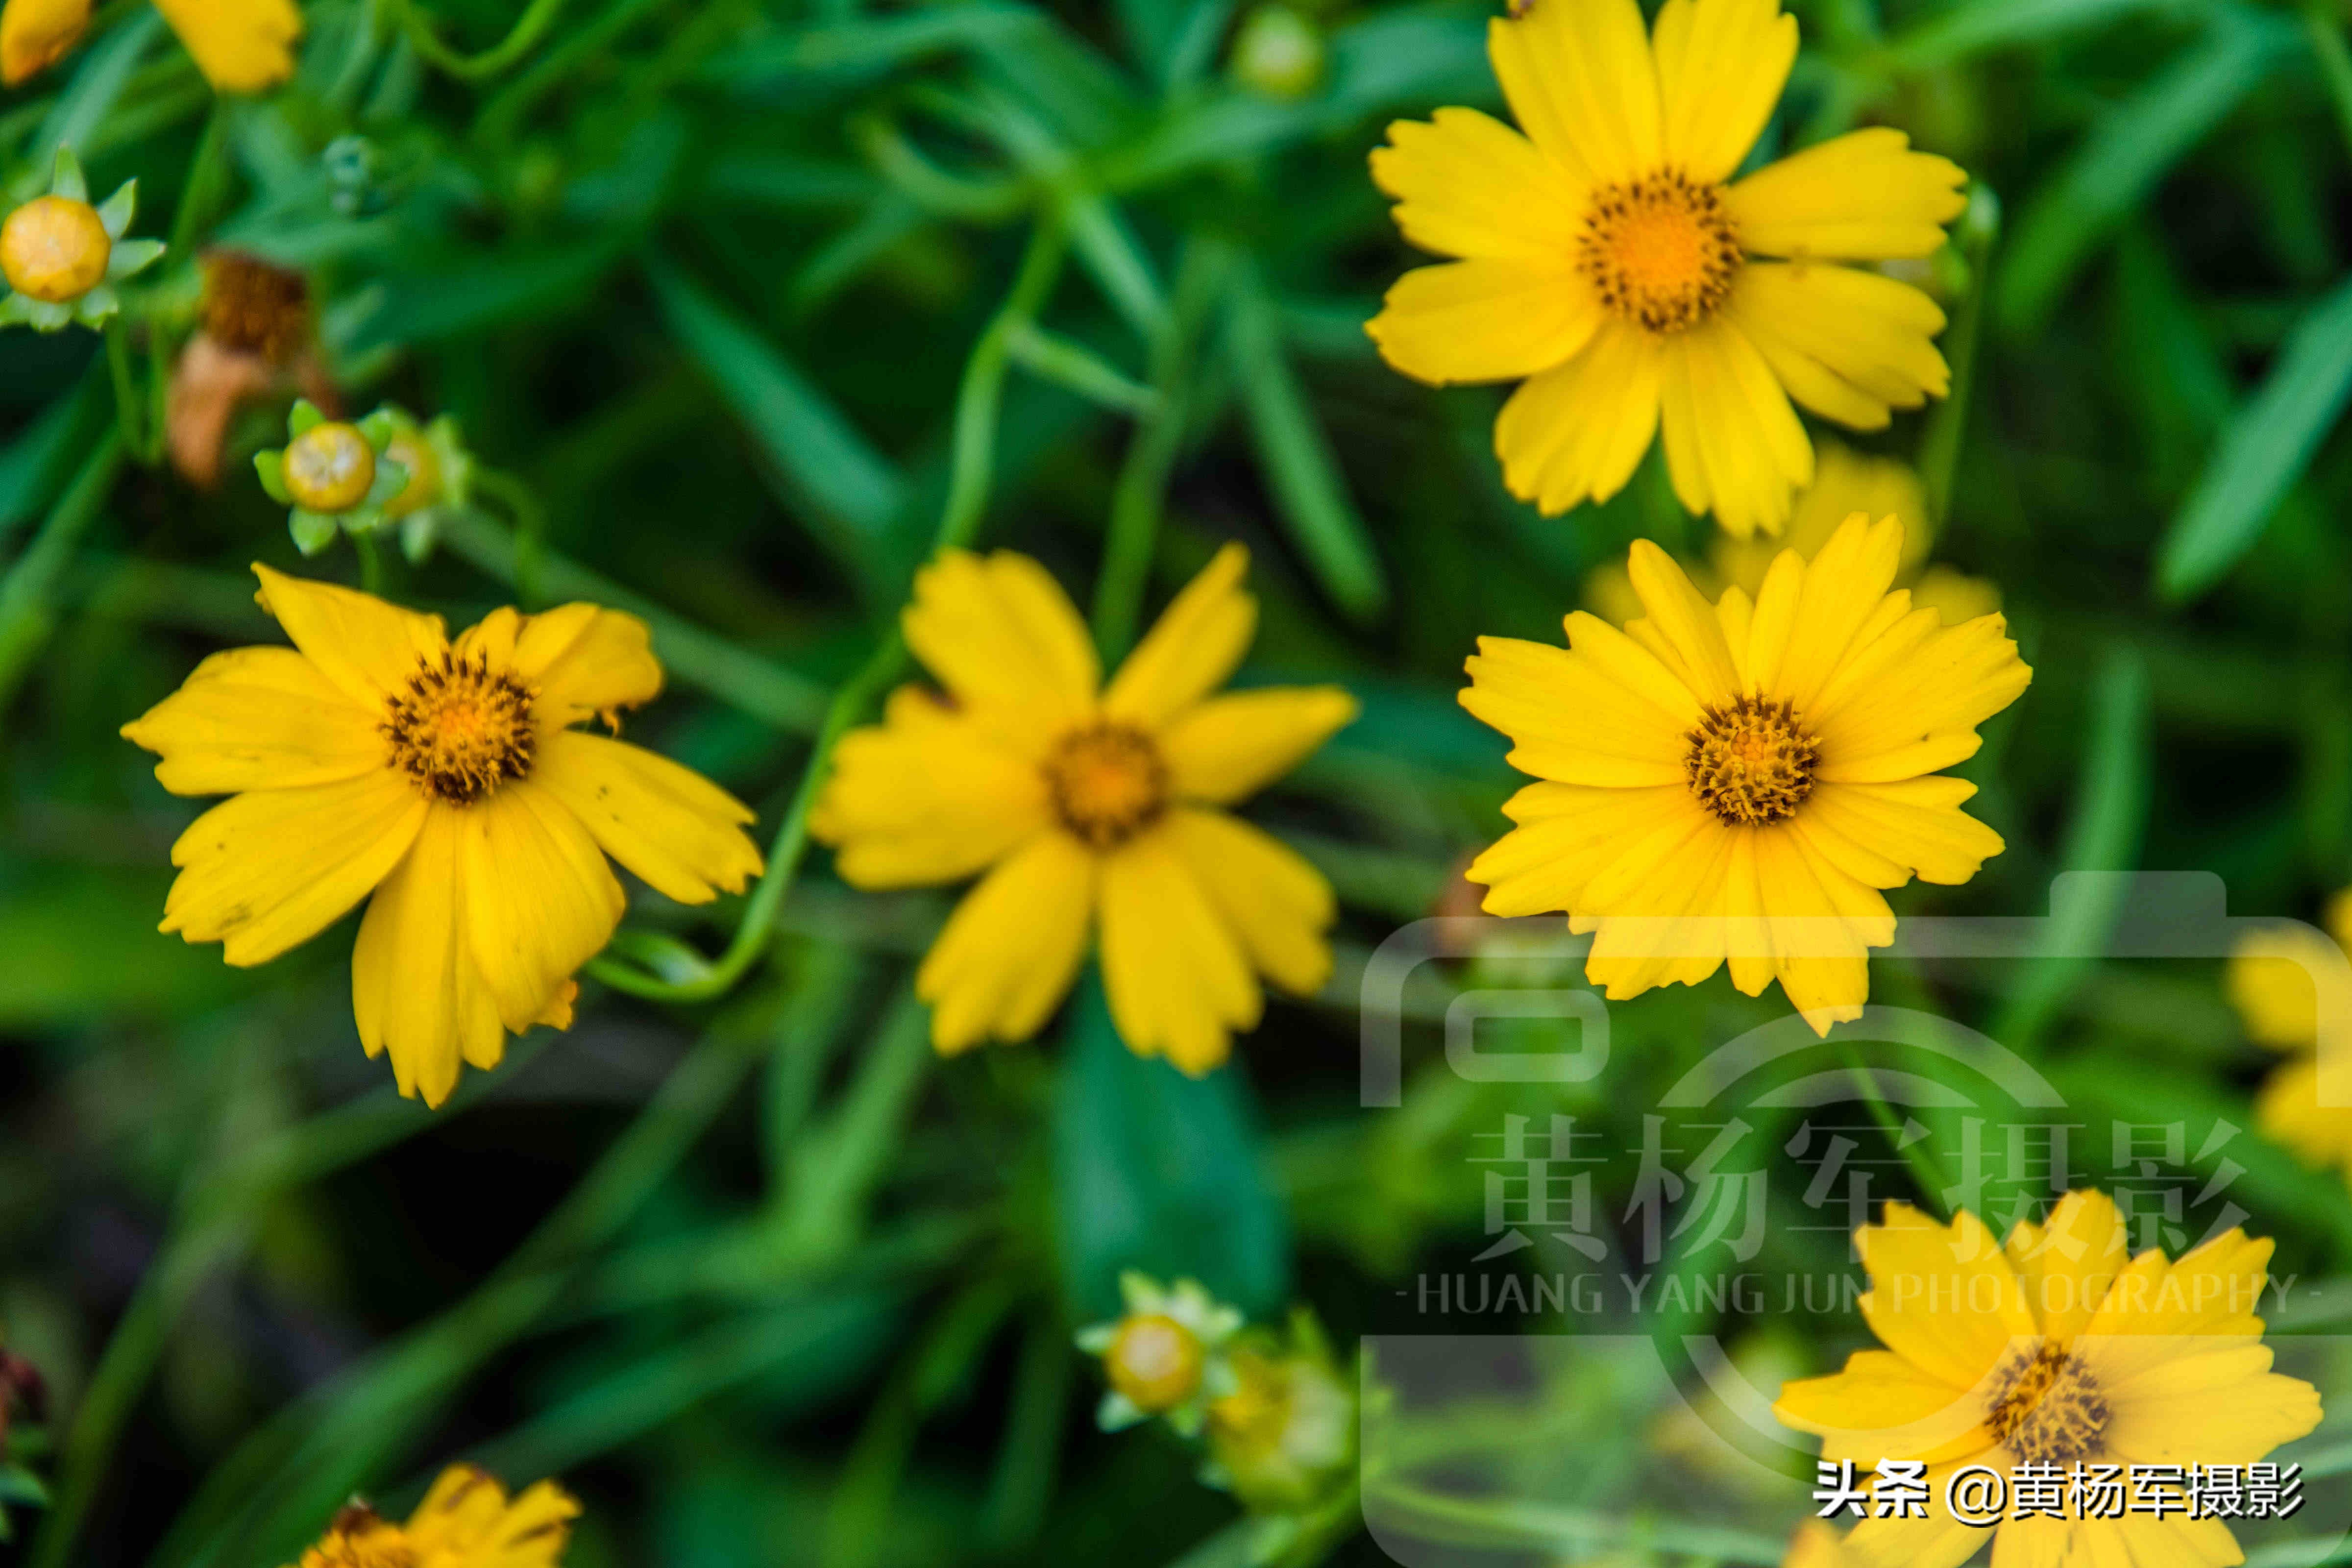 夏日盛开美如画的金鸡菊 金黄的花朵惹人爱 花繁叶茂的菊科植物 资讯咖